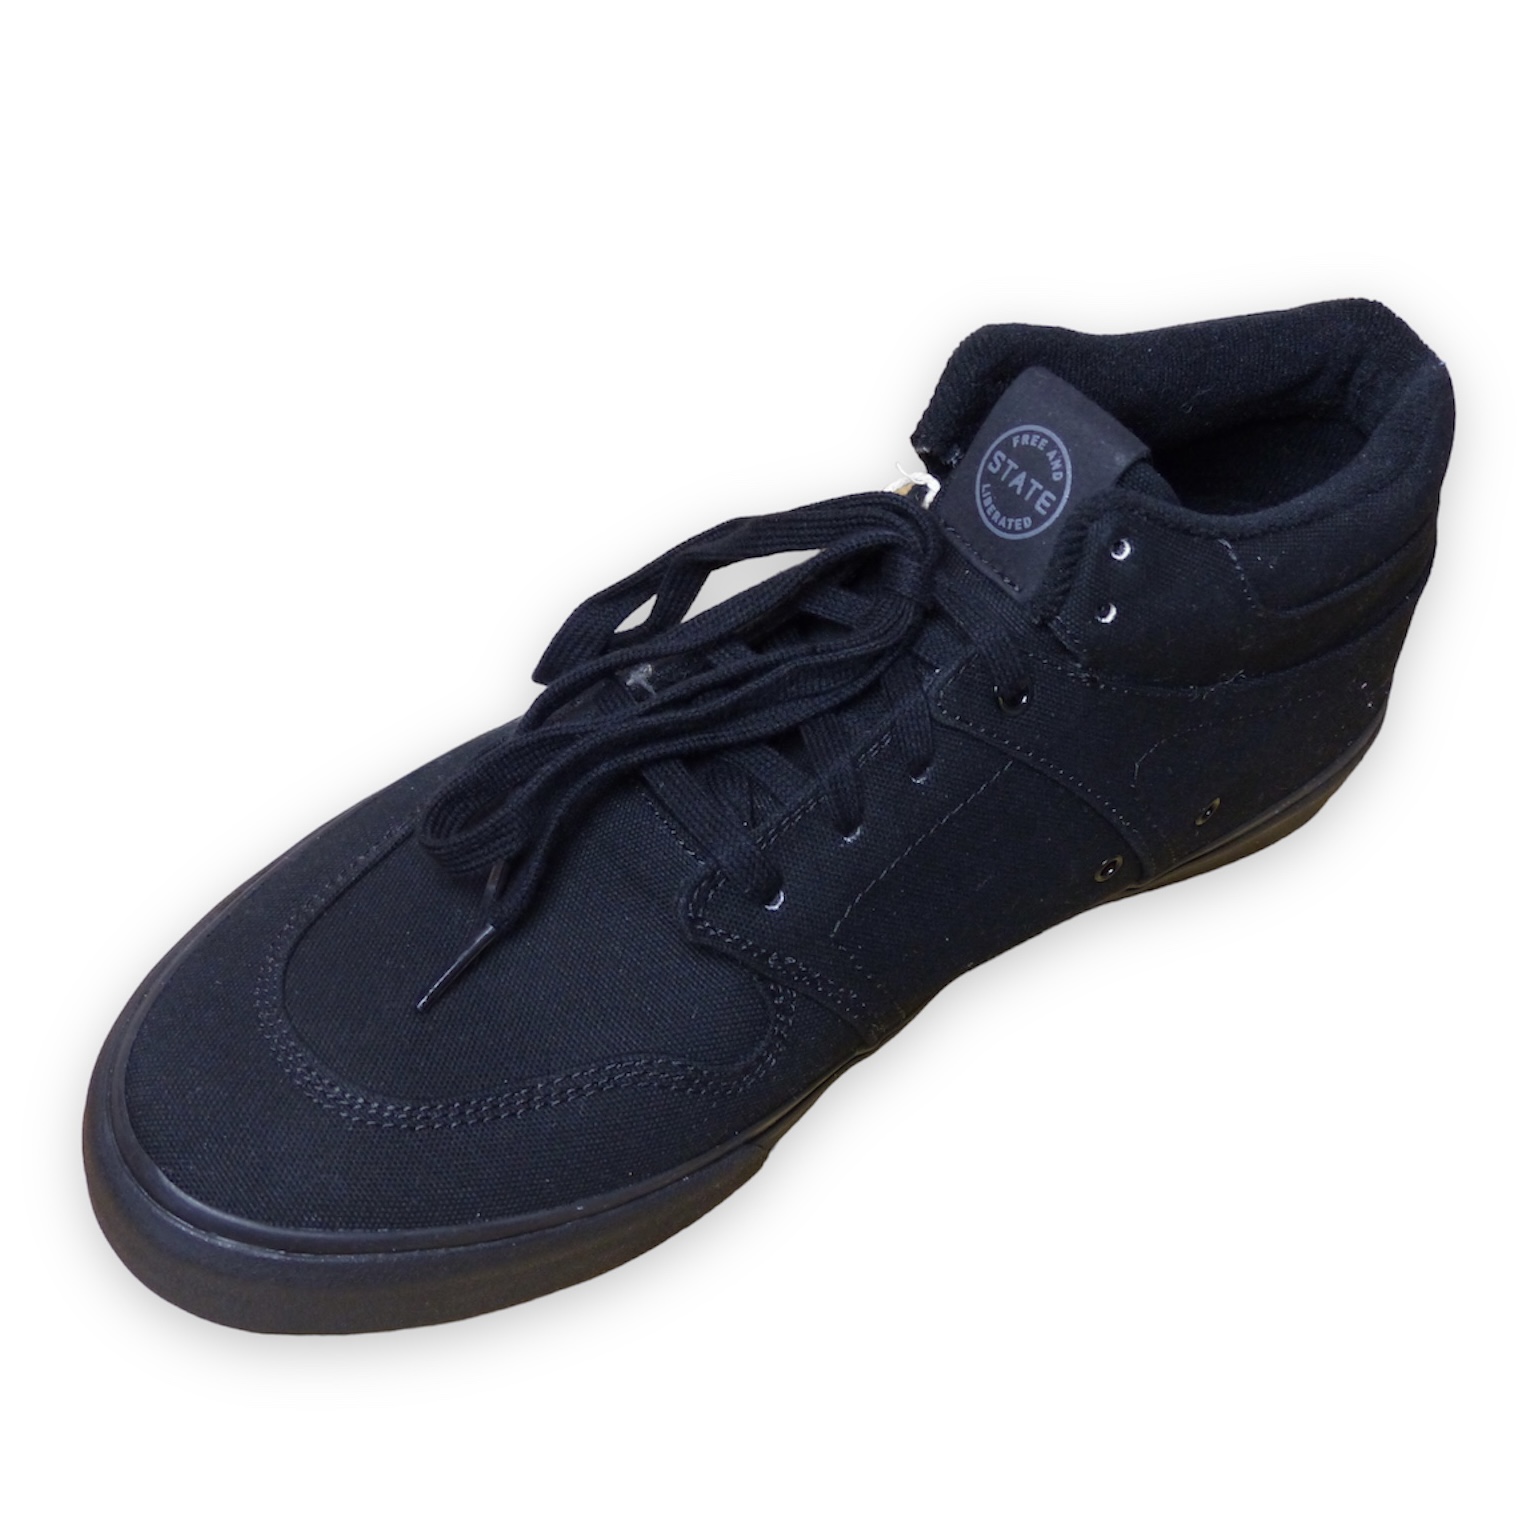 STATE Mercer Black Skate Shoes